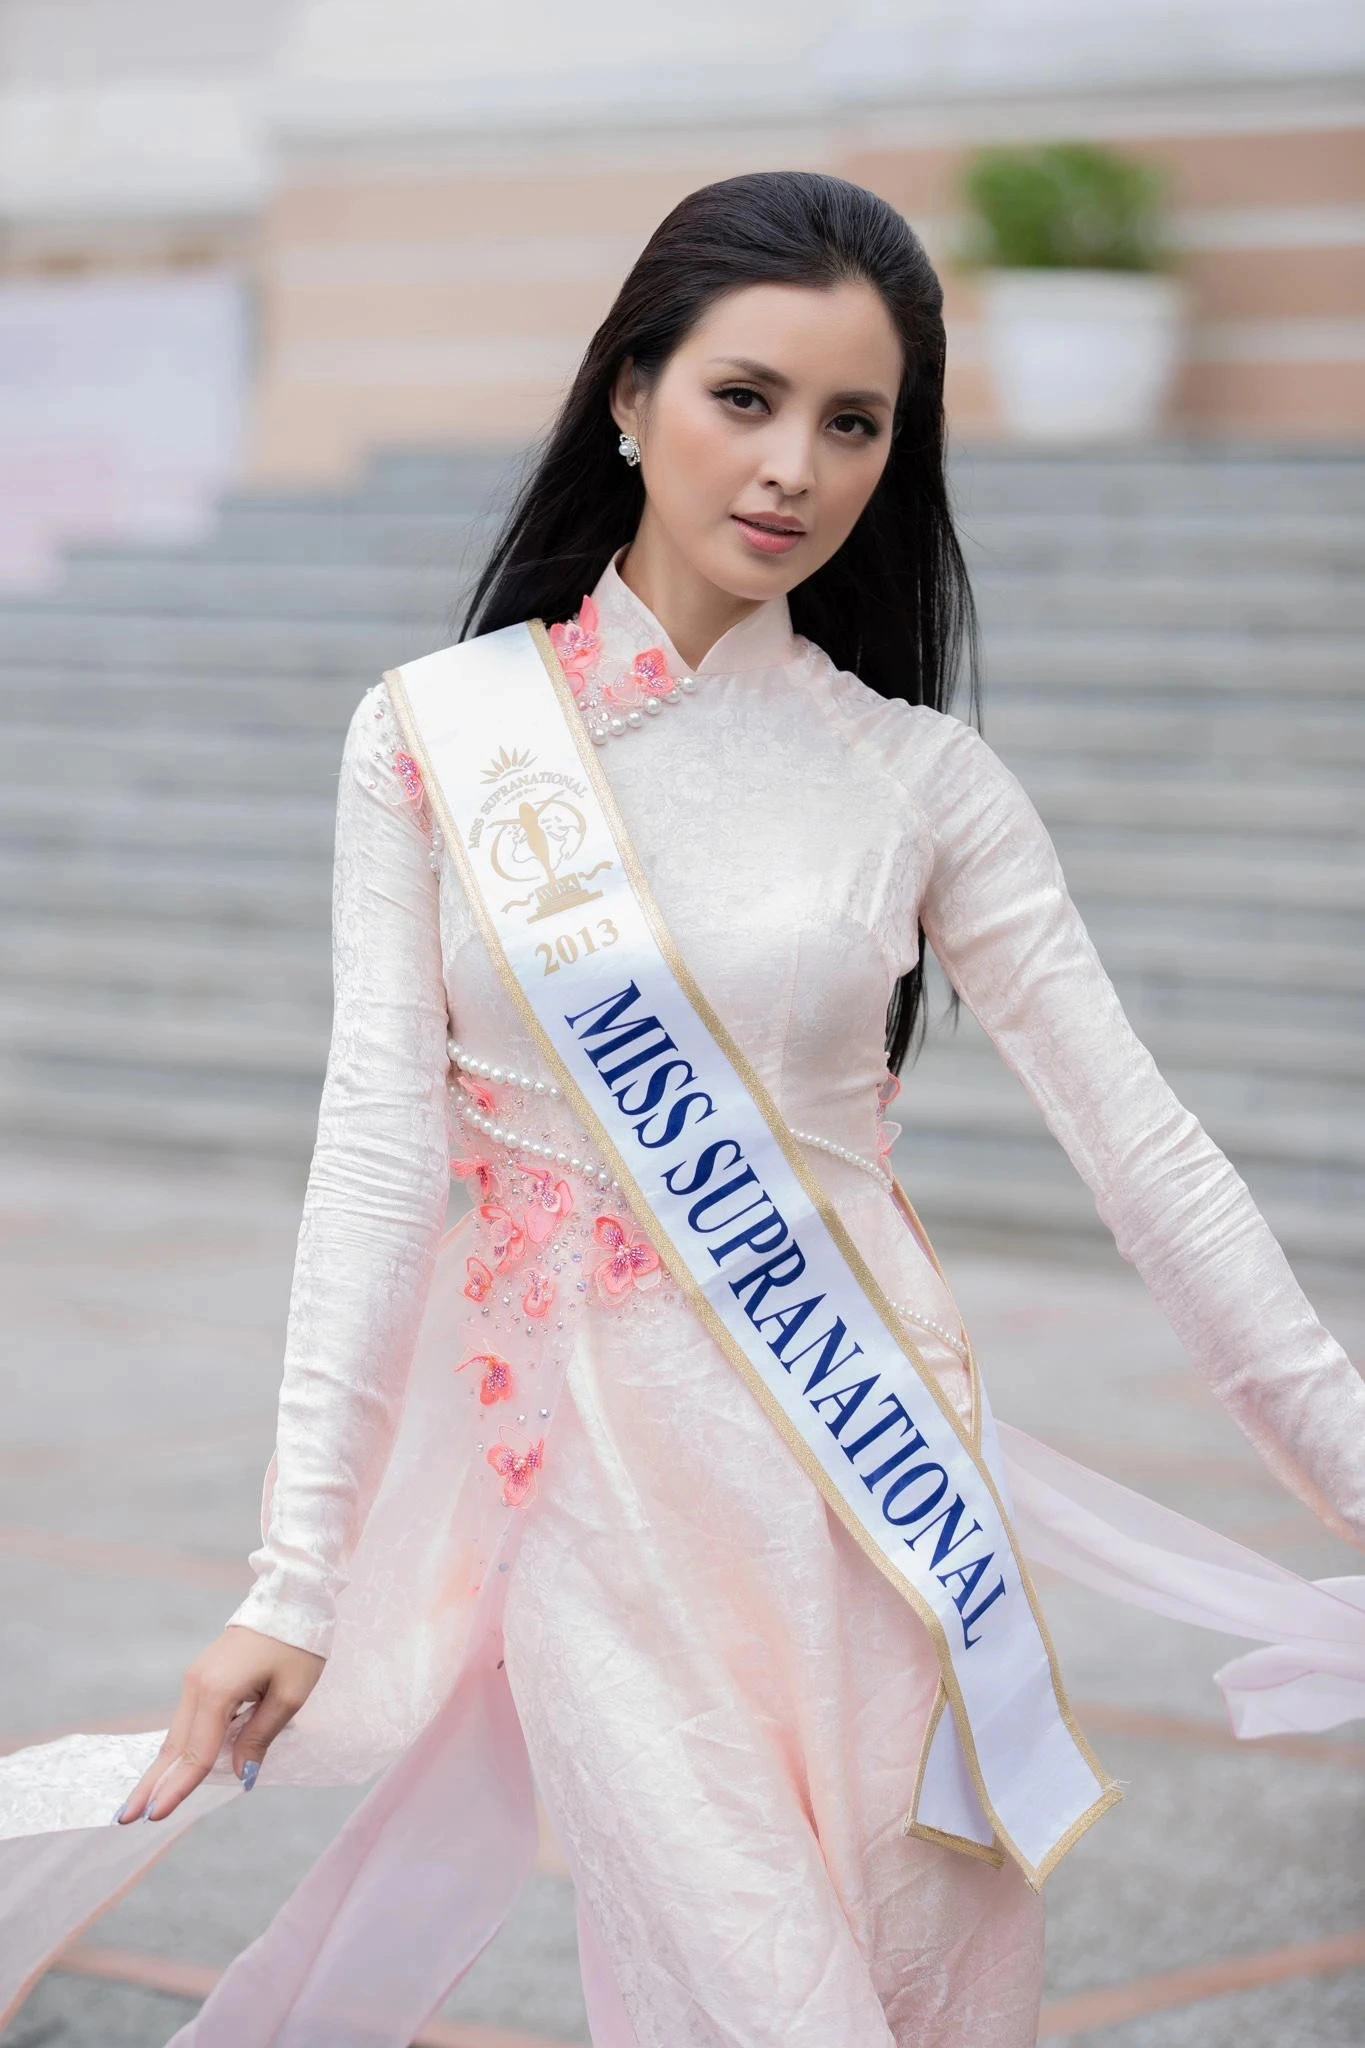 Điểm chung của các hoa hậu quốc tế khi diện áo dài truyền thống Việt Nam - Ảnh 10.